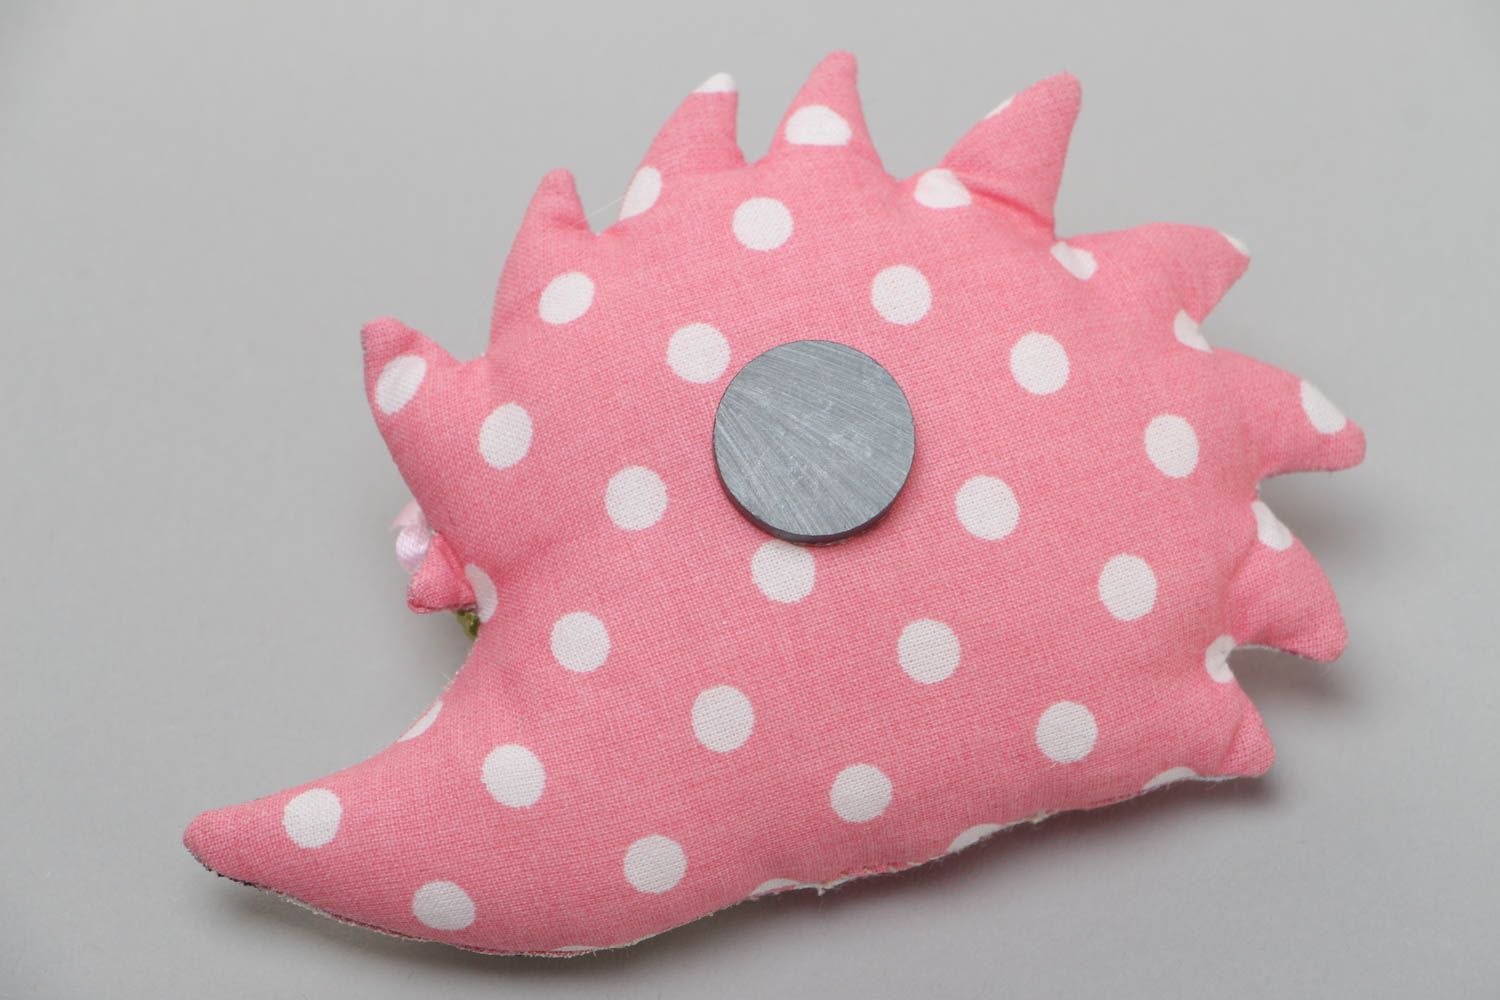 Textil Kühlschrankmagnet Spielzeug Igel rosa in Punkt weich handgemacht  foto 4